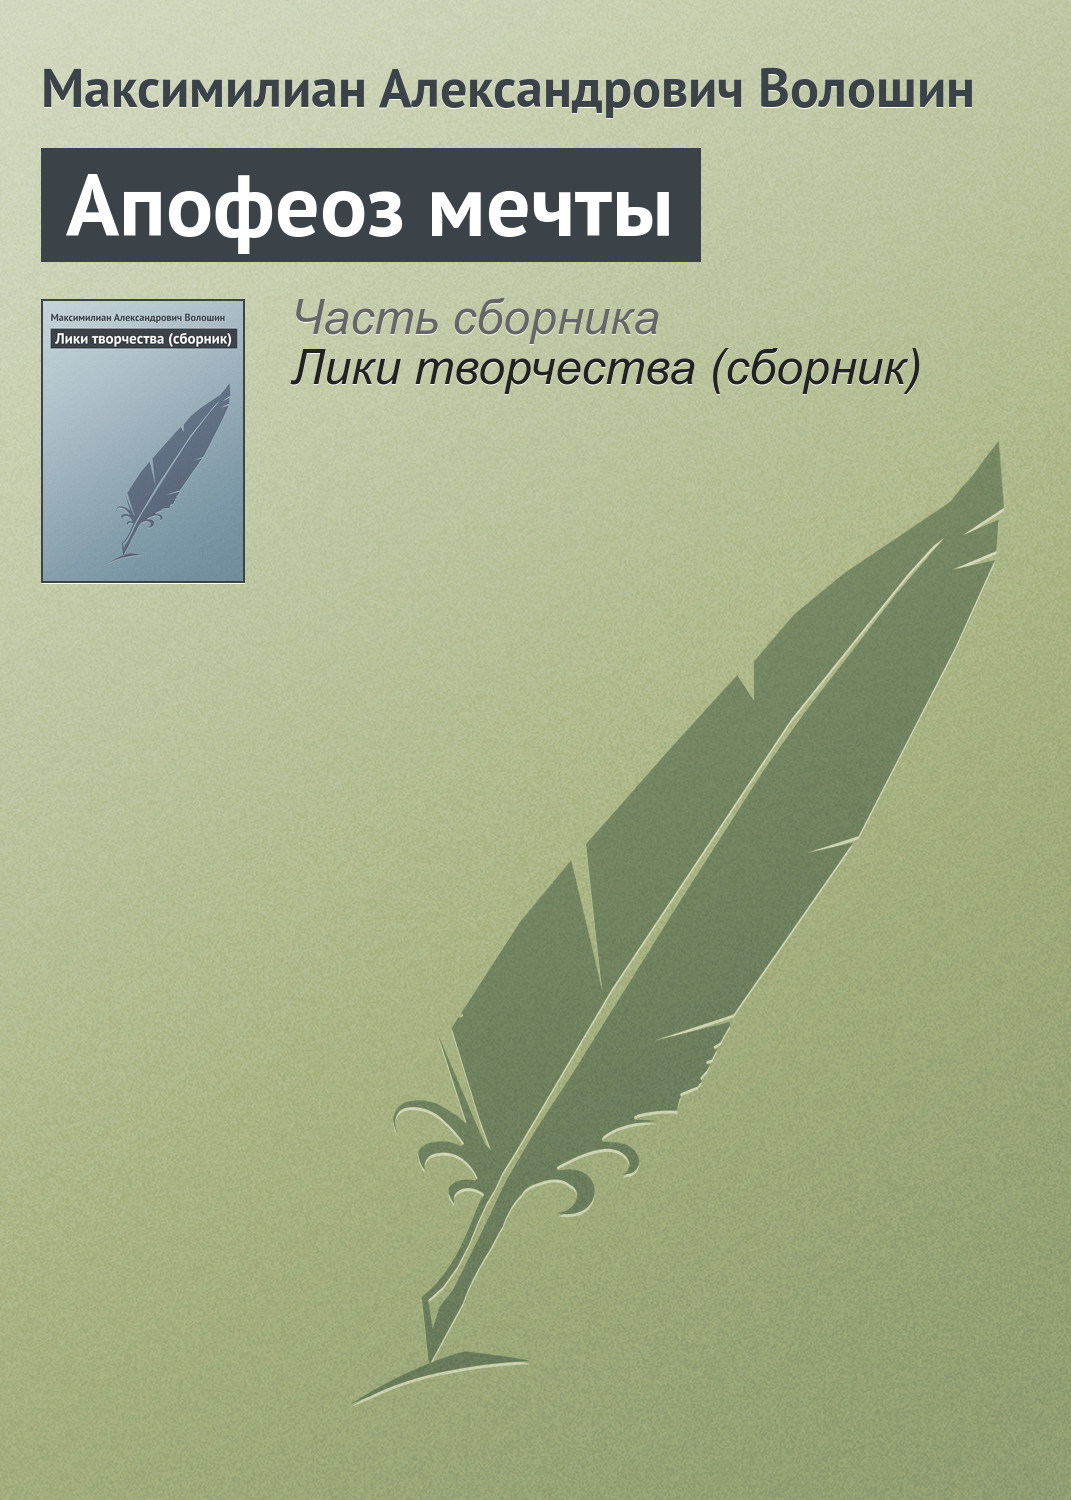 Книга Апофеоз мечты из серии , созданная Максимилиан Волошин, может относится к жанру Критика. Стоимость электронной книги Апофеоз мечты с идентификатором 22832787 составляет 5.99 руб.